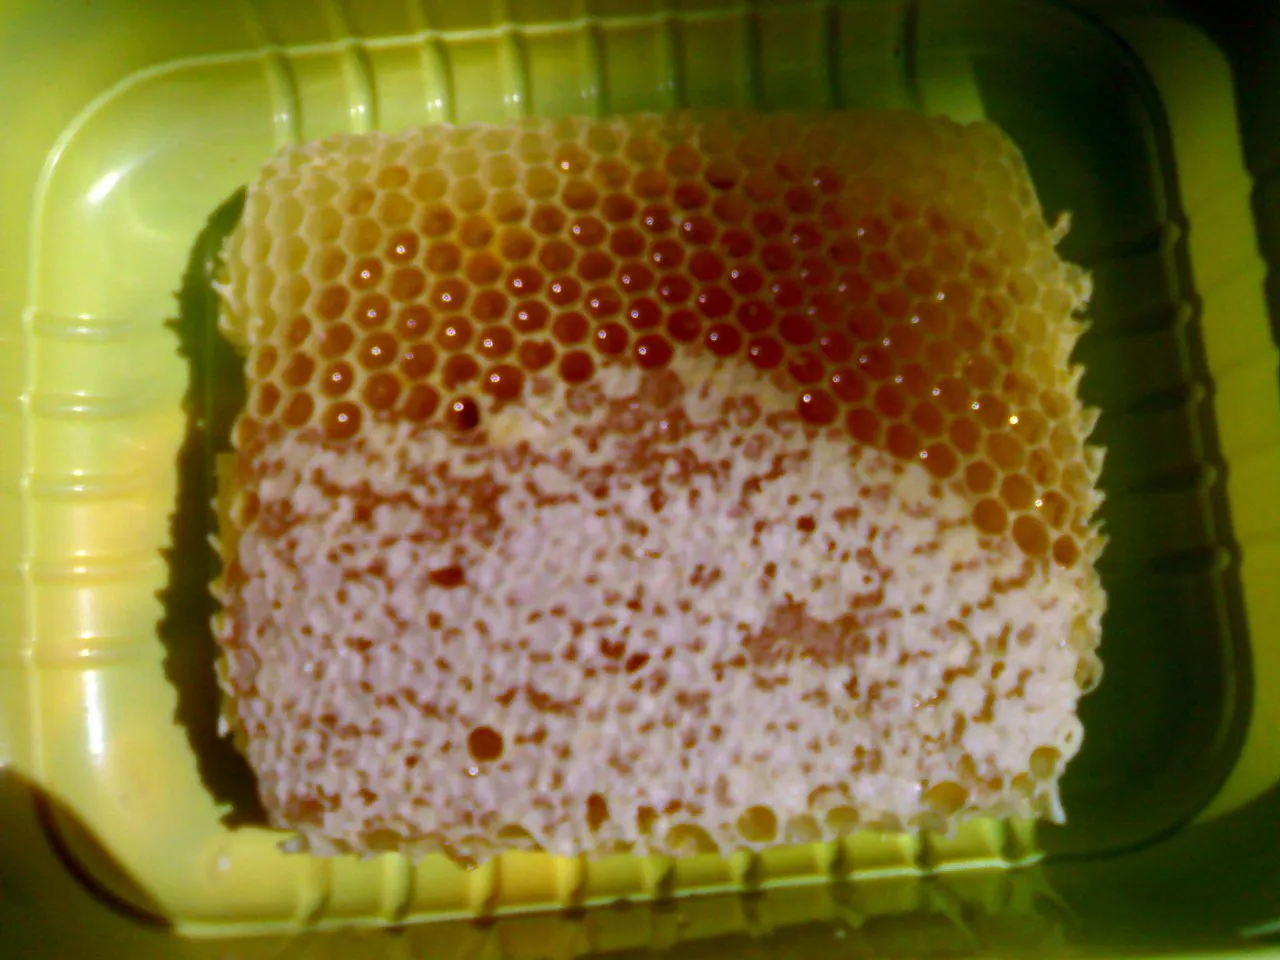 bees10.jpg